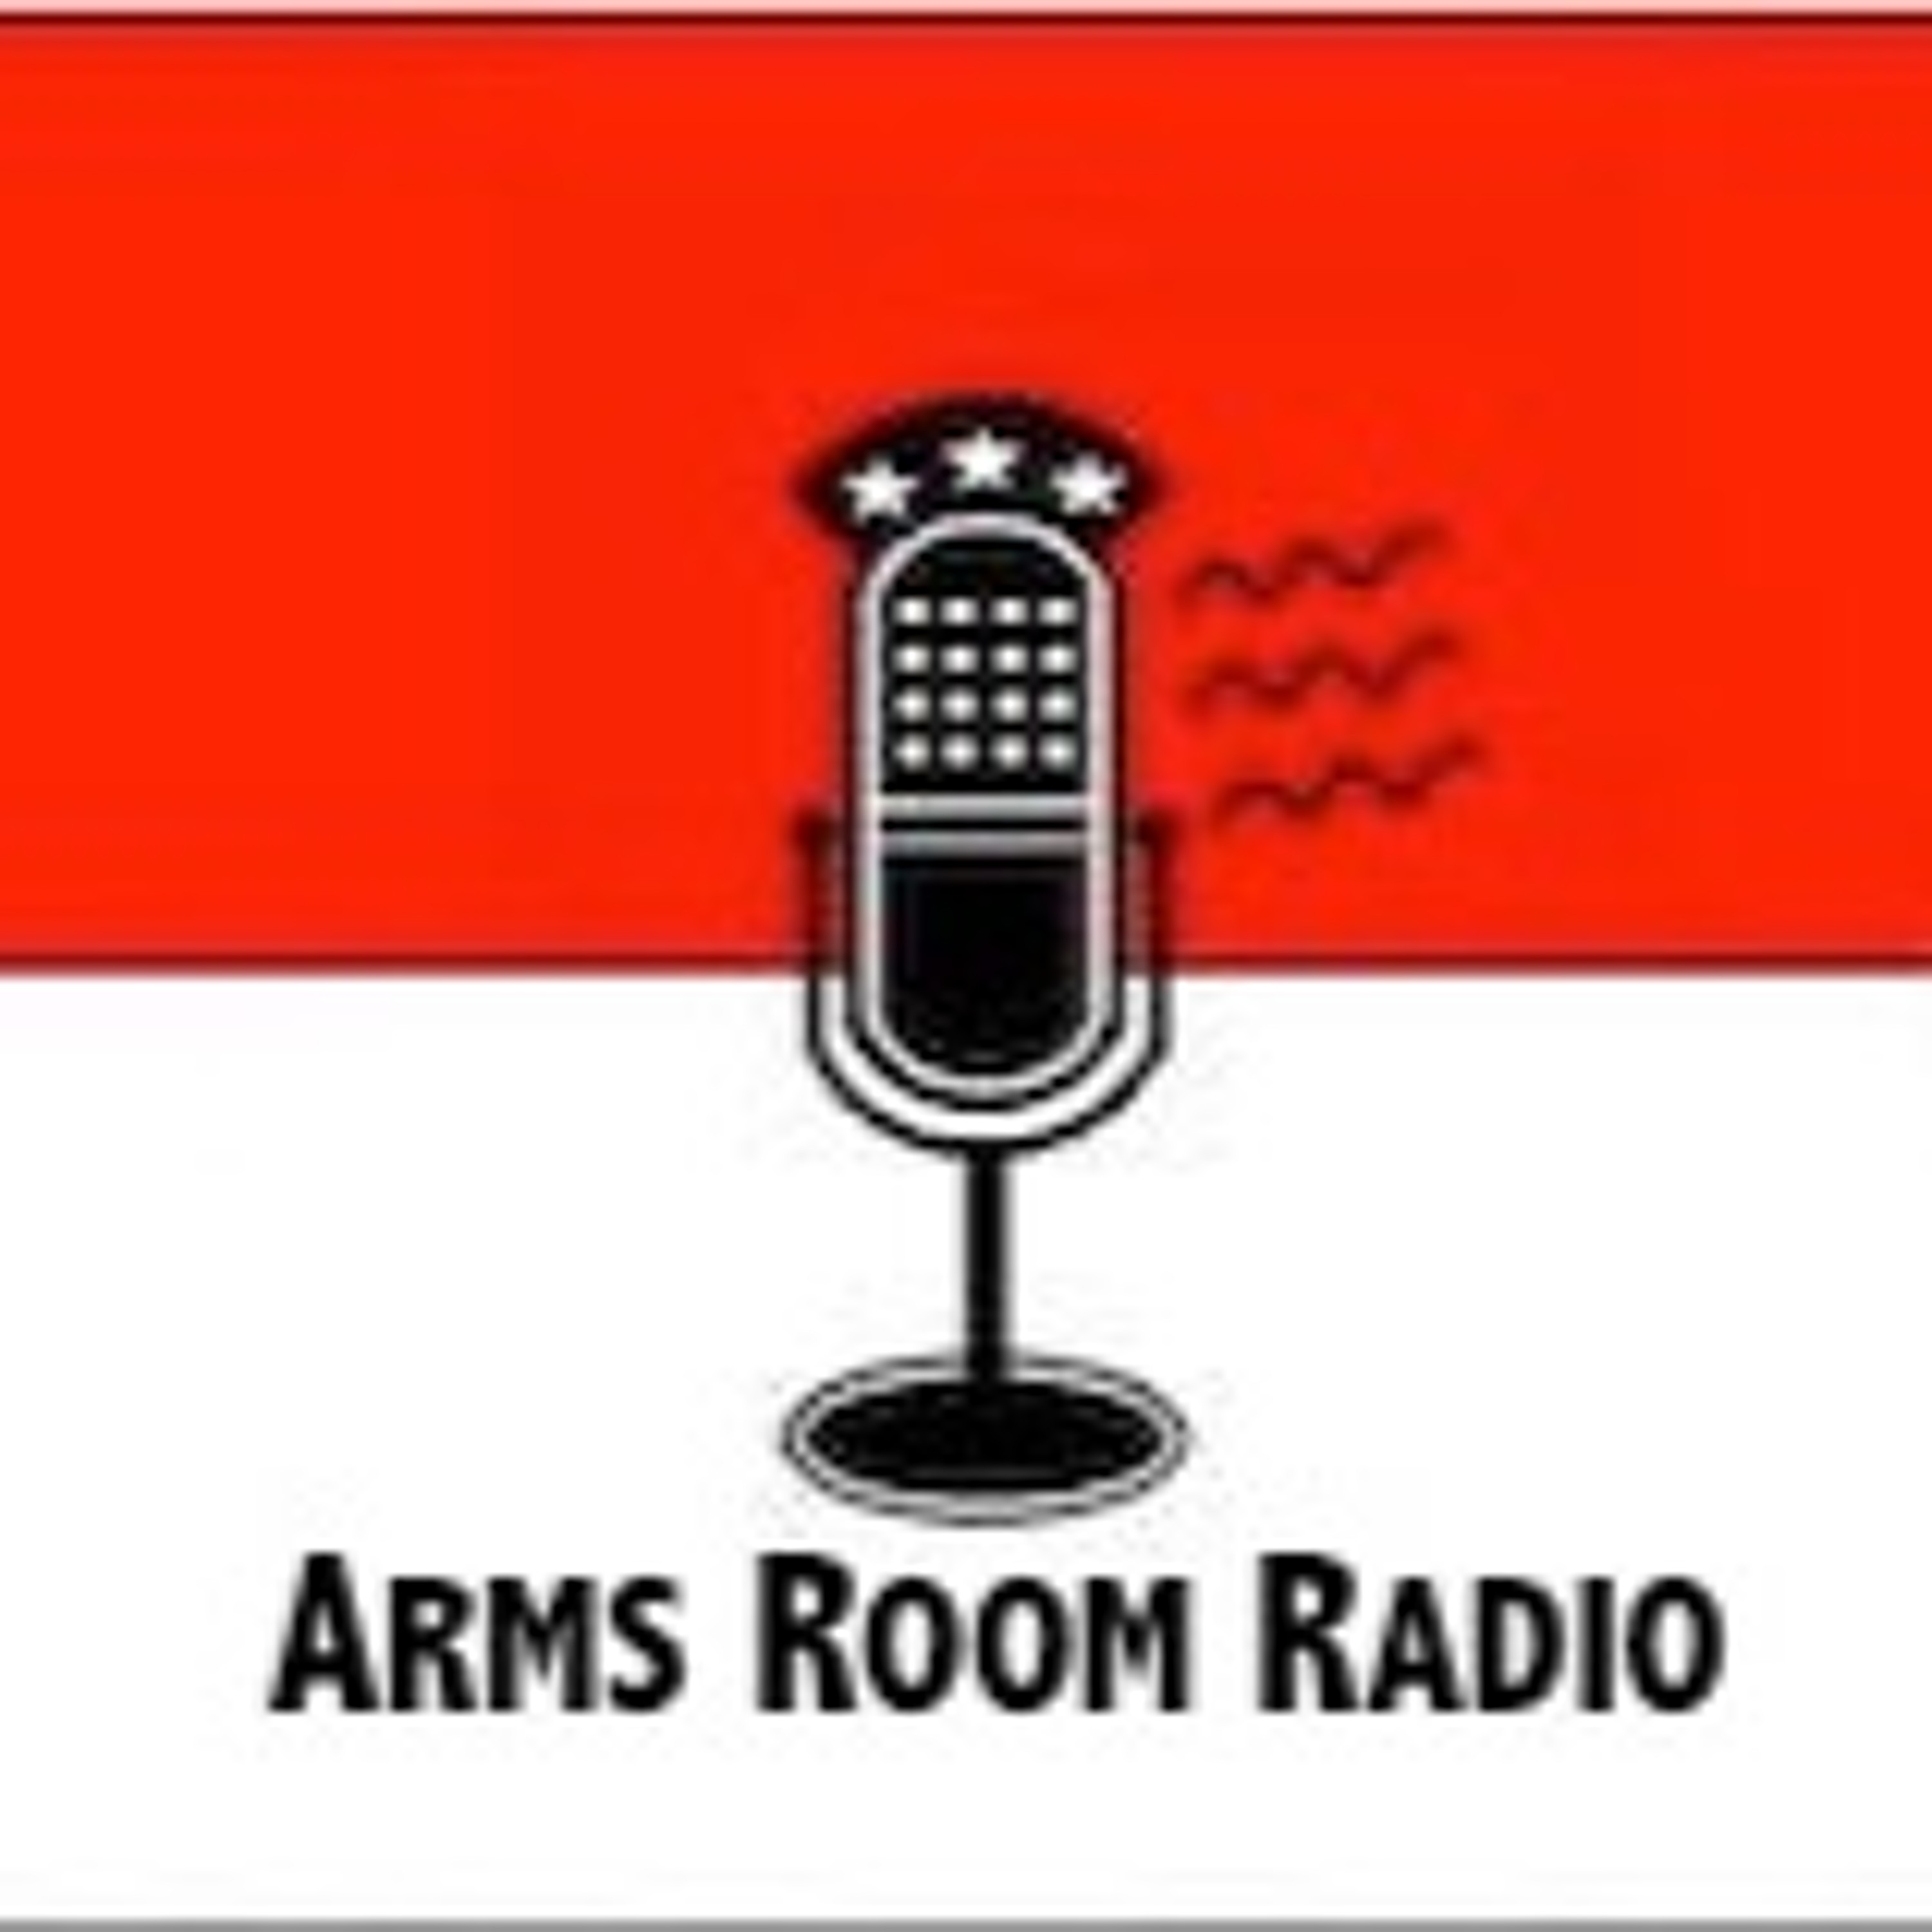 ArmsRoomRadio 12.14.19 Glock 44, Steve FL Carry